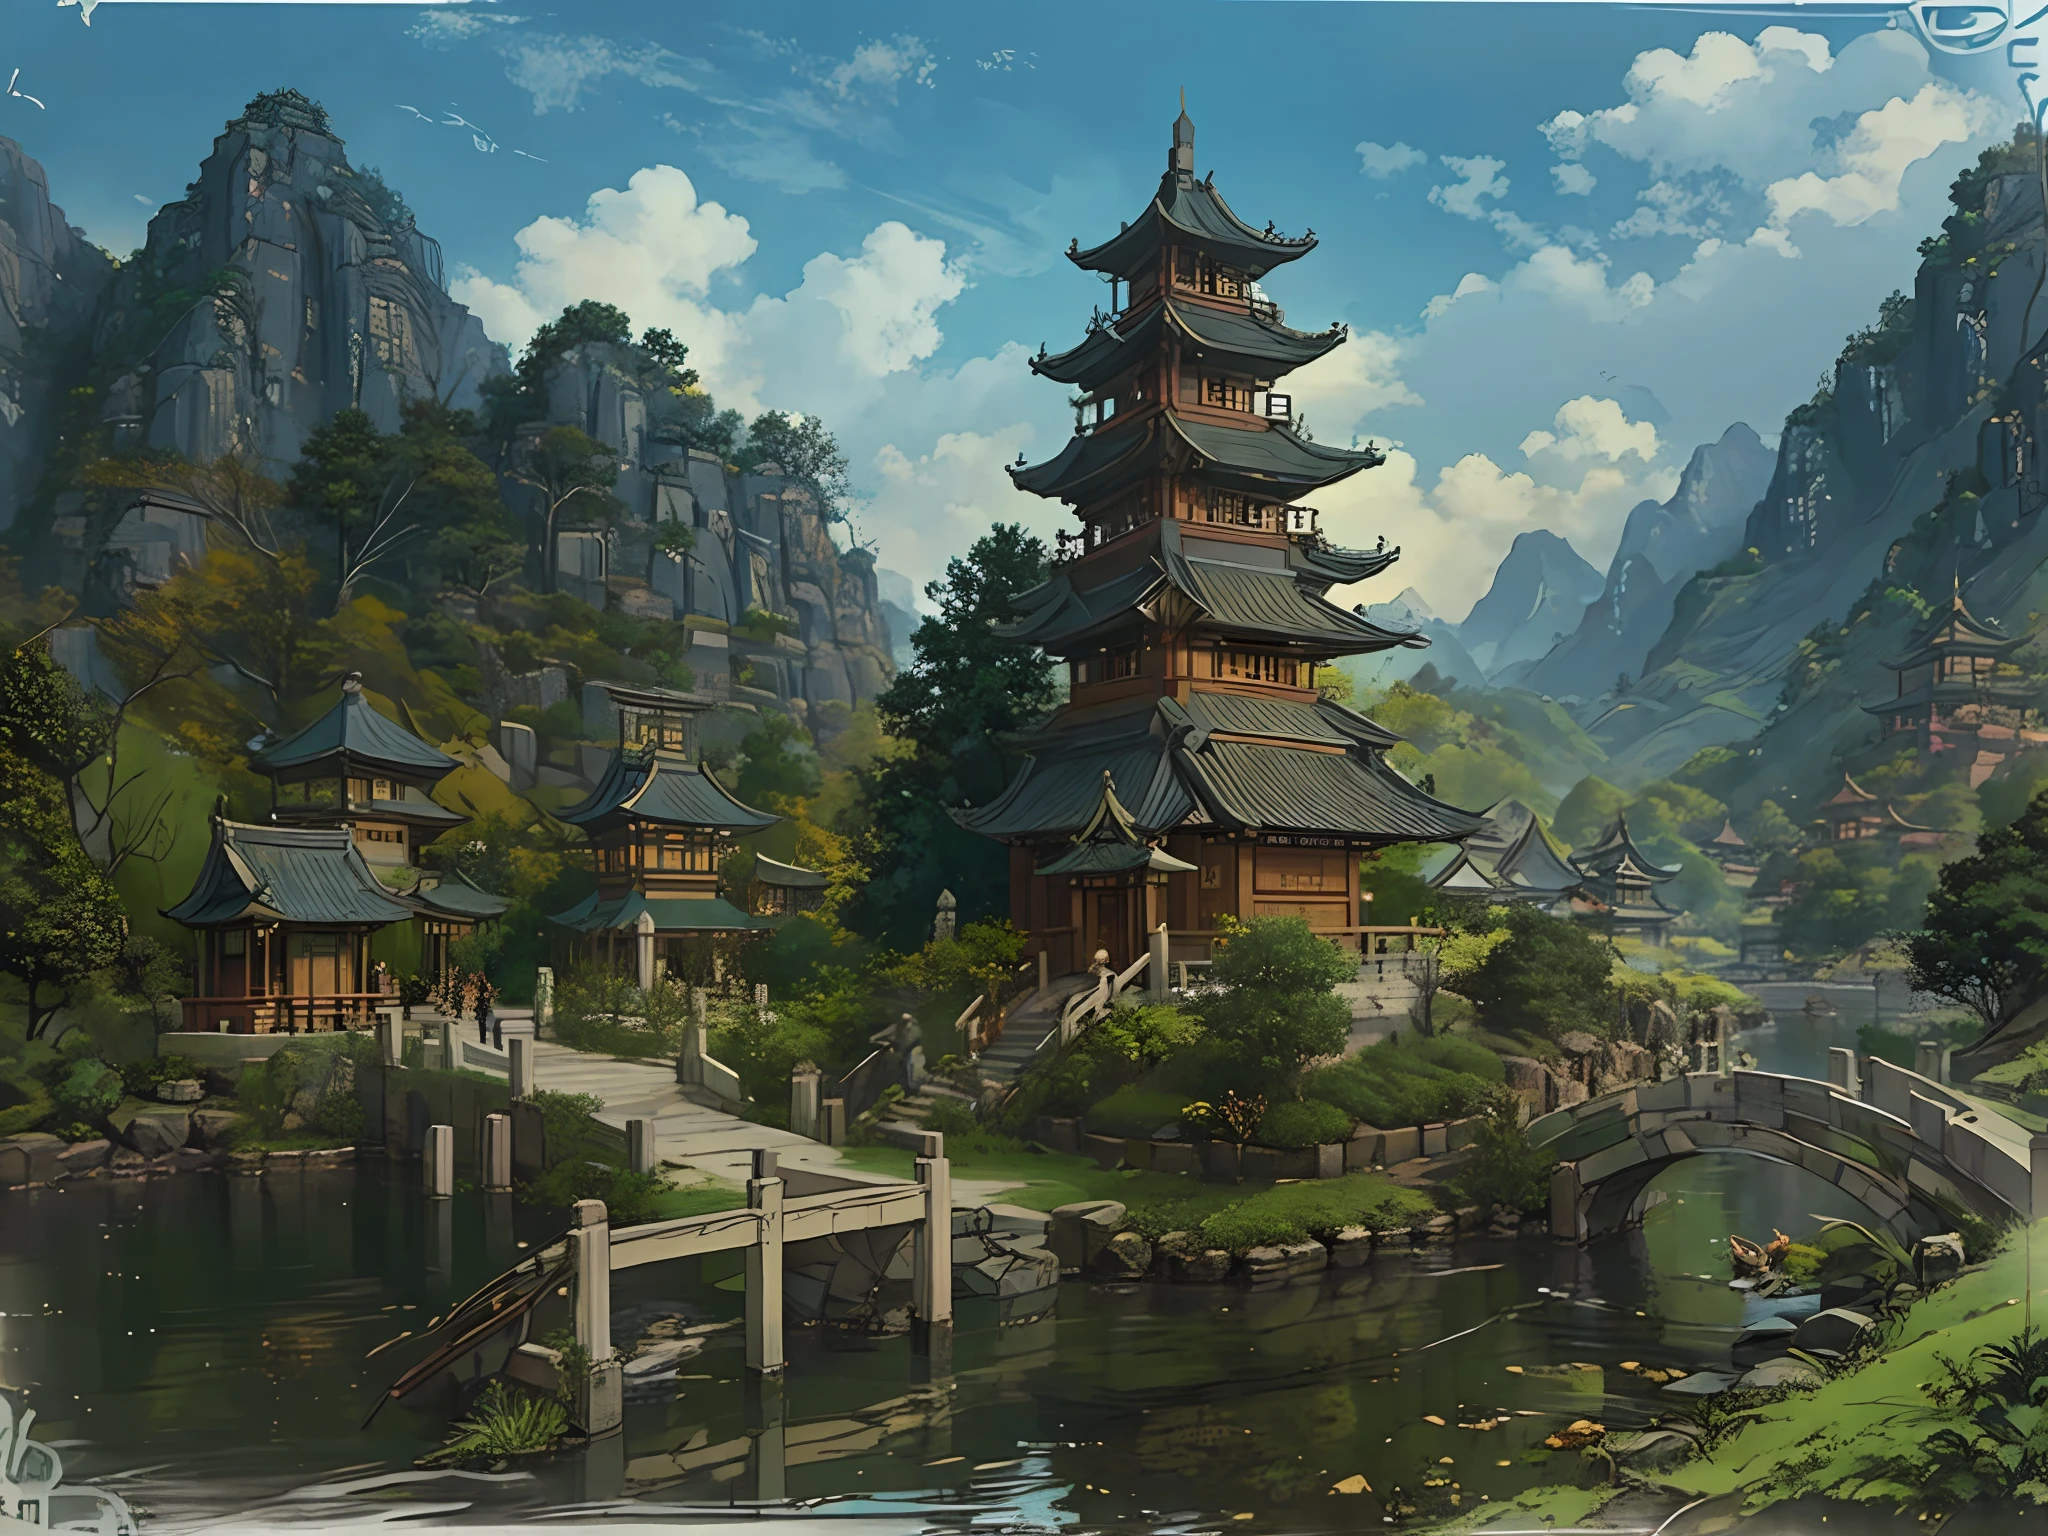 與橋樑和塔的中國村莊風景, 景观艺术品, G Ryurian藝術風格, 寺庙背景, 風景遊戲概念藝術, 詳細風景 - 寬度 672, 美麗的藝術插圖, zen 寺庙背景,